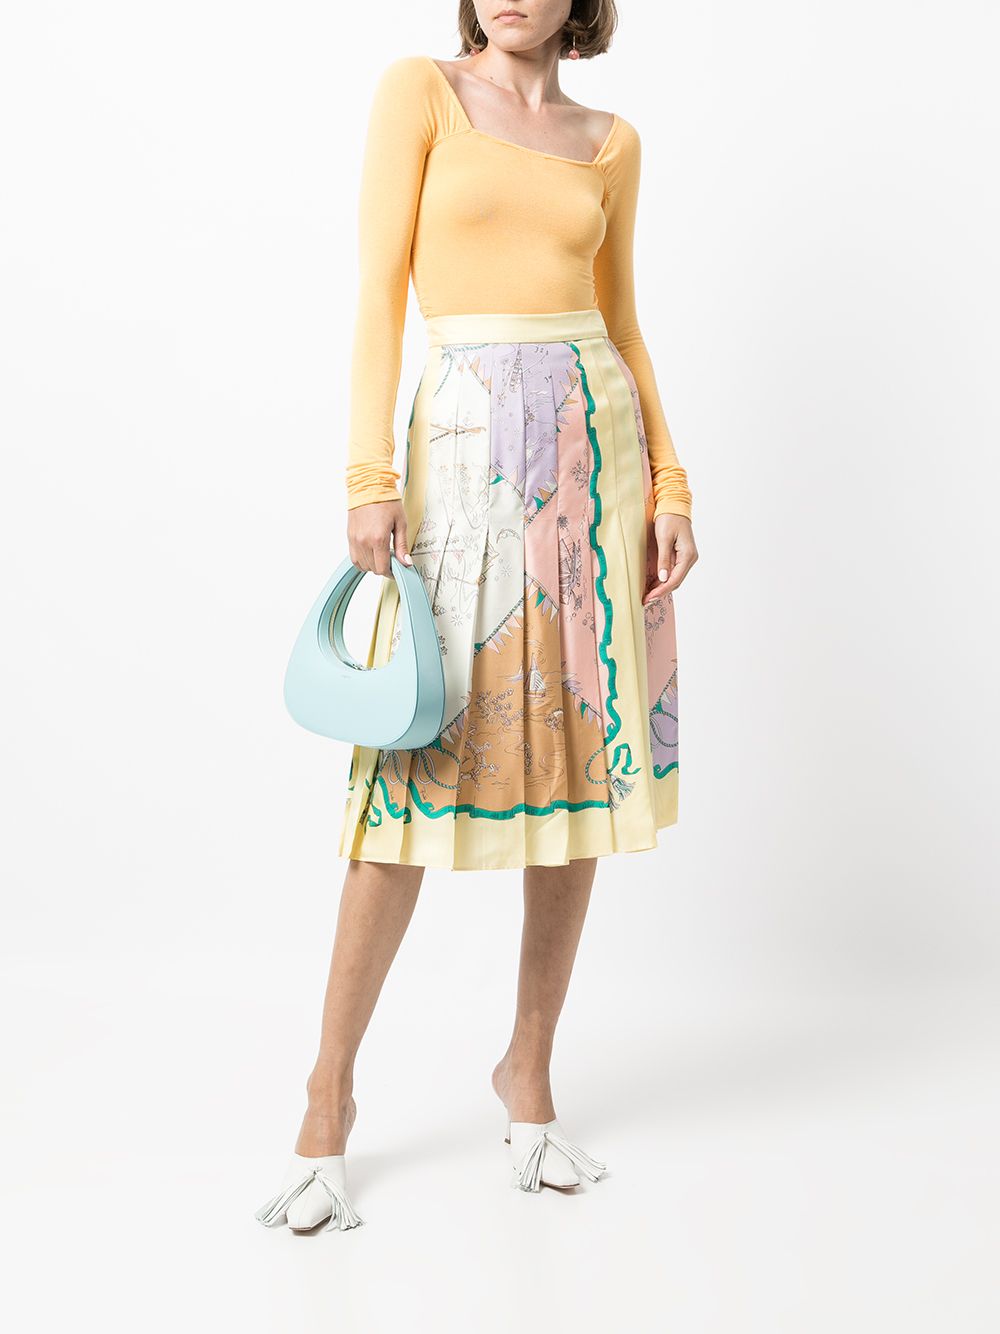 фото Emilio pucci плиссированная юбка с графичным принтом